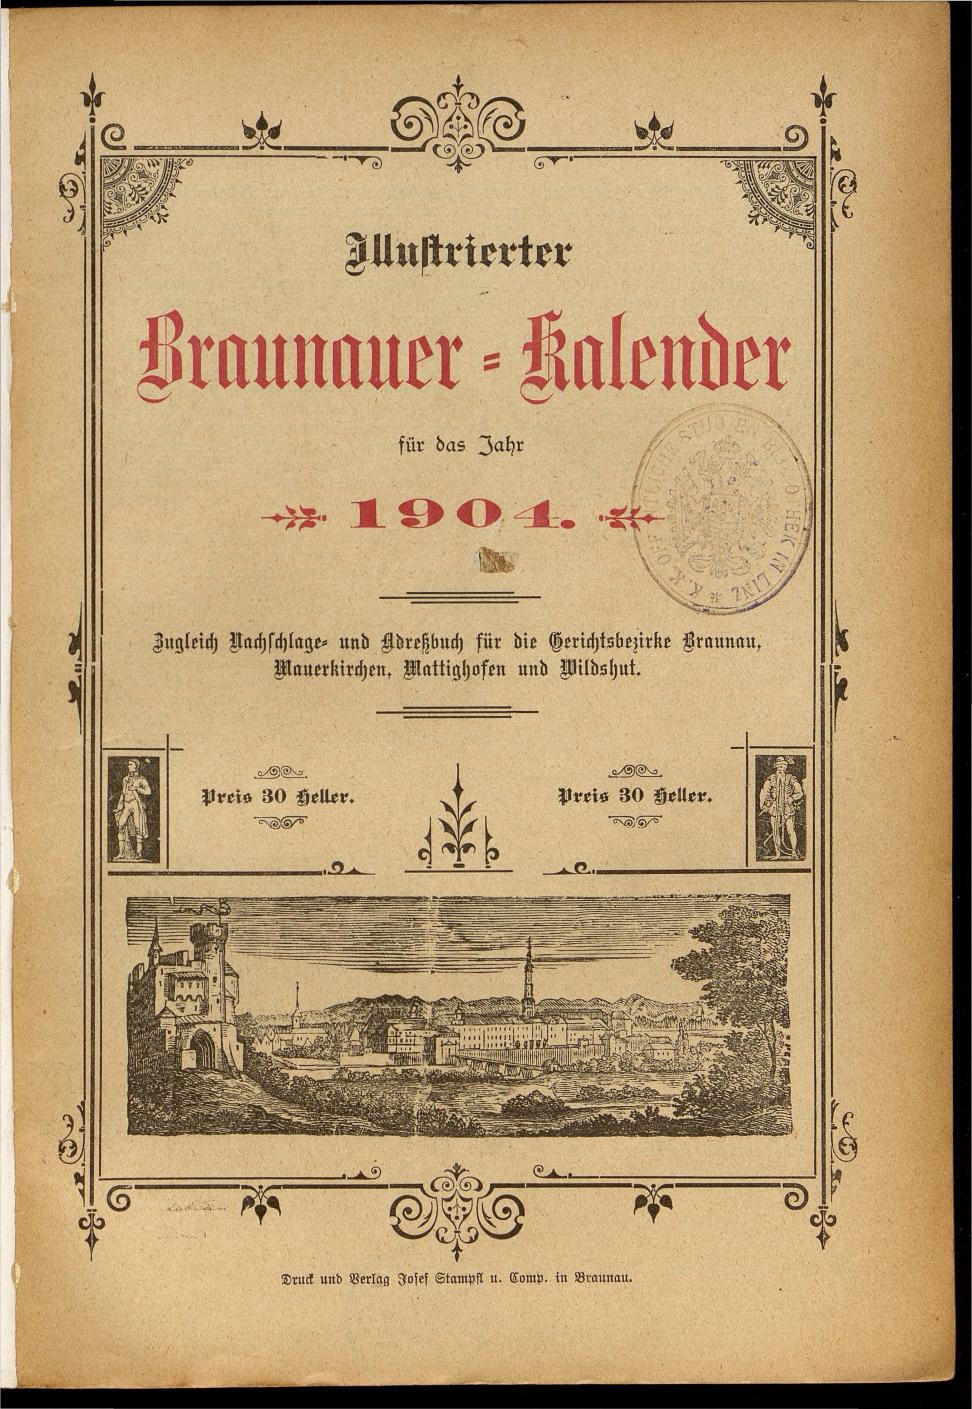 Illustrierter Braunauer-Kalender für das Jahr 1904 - Seite 5